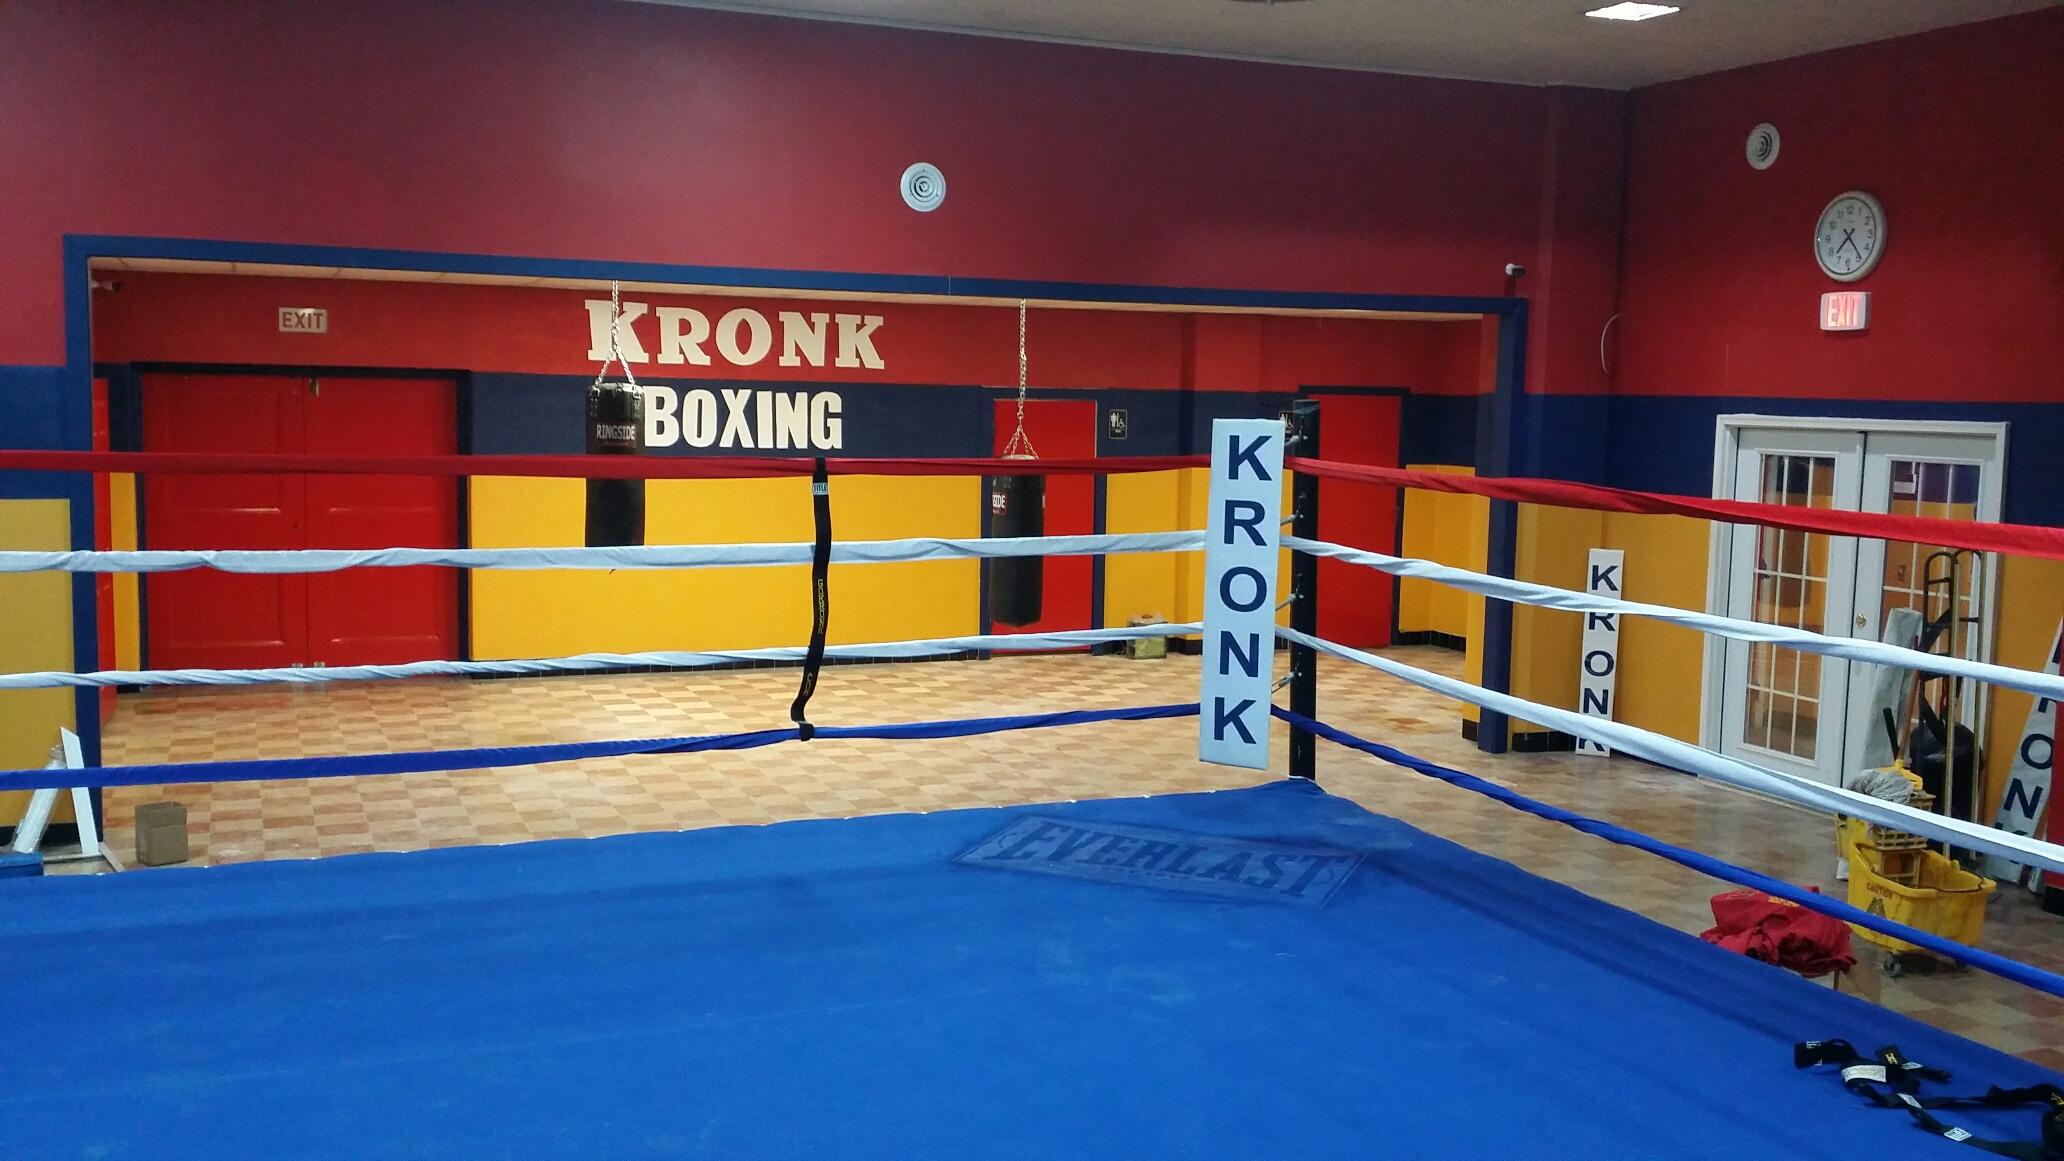 Boxeo regresa al Kronk Gym en Detroit el 20 de agosto